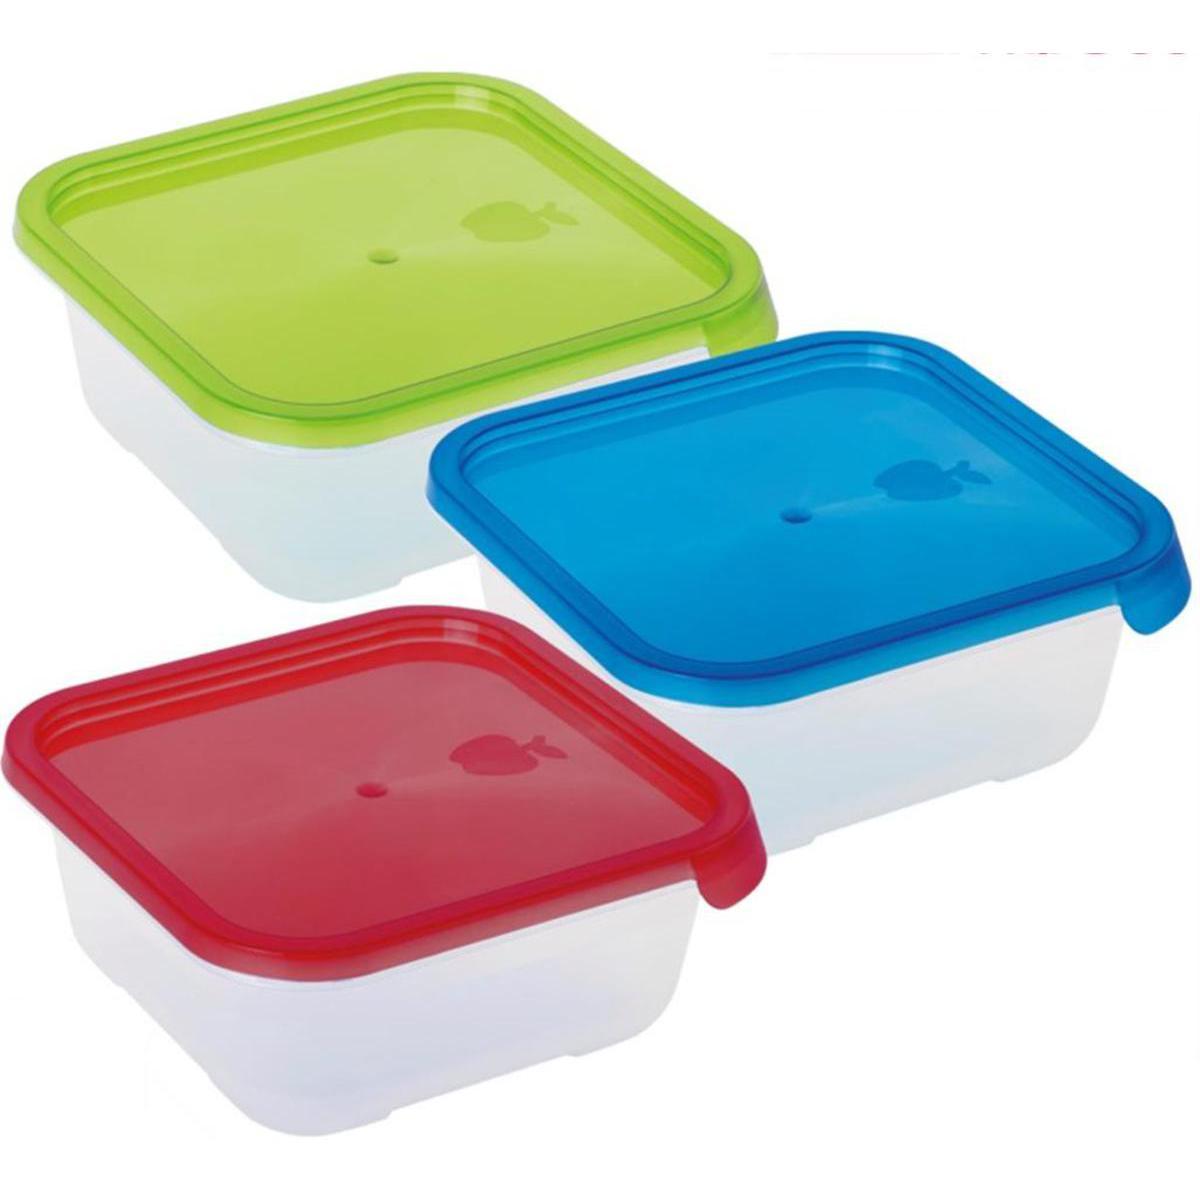 Boite alimentaire carrée - Plastique - 16 x 16 x 5,8 cm - Vert, bleu, rouge